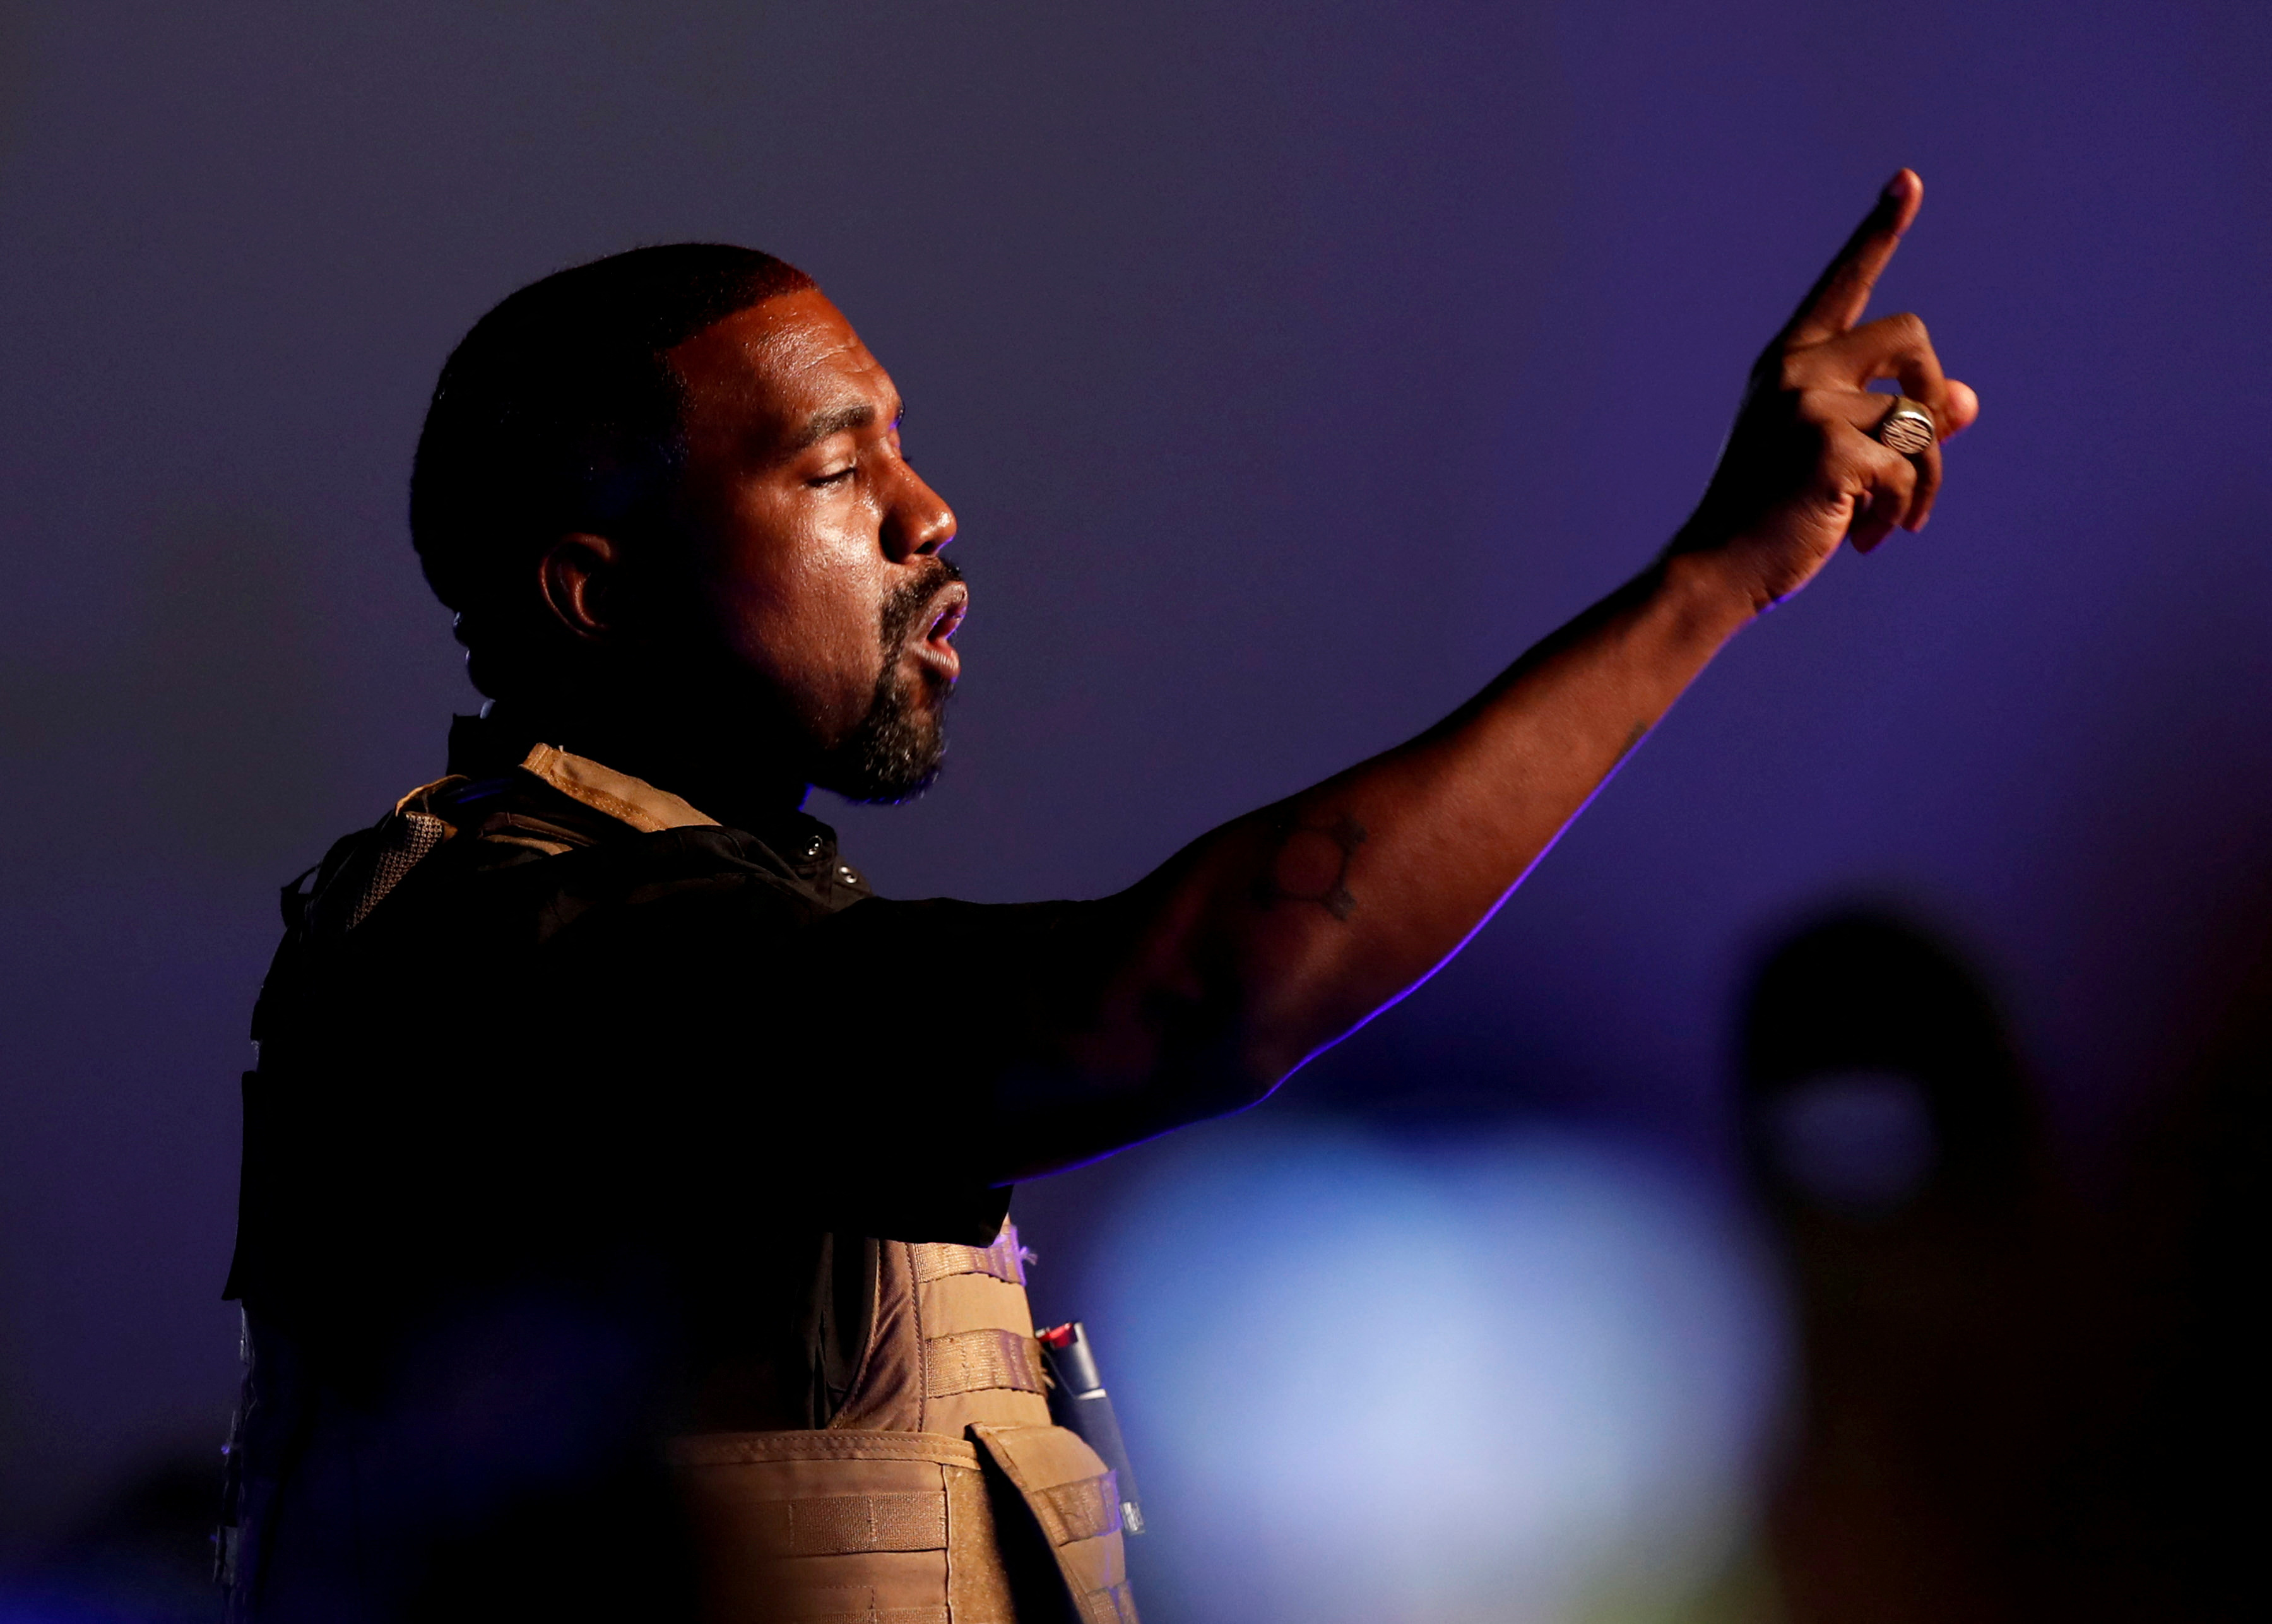 Kanye West fue muy activo en redes mientras ocurría su divorcio, criticando a su ex esposa y acusándola de no dejarlo ver a sus hijos.  REUTERS/Randall Hill/File Photo